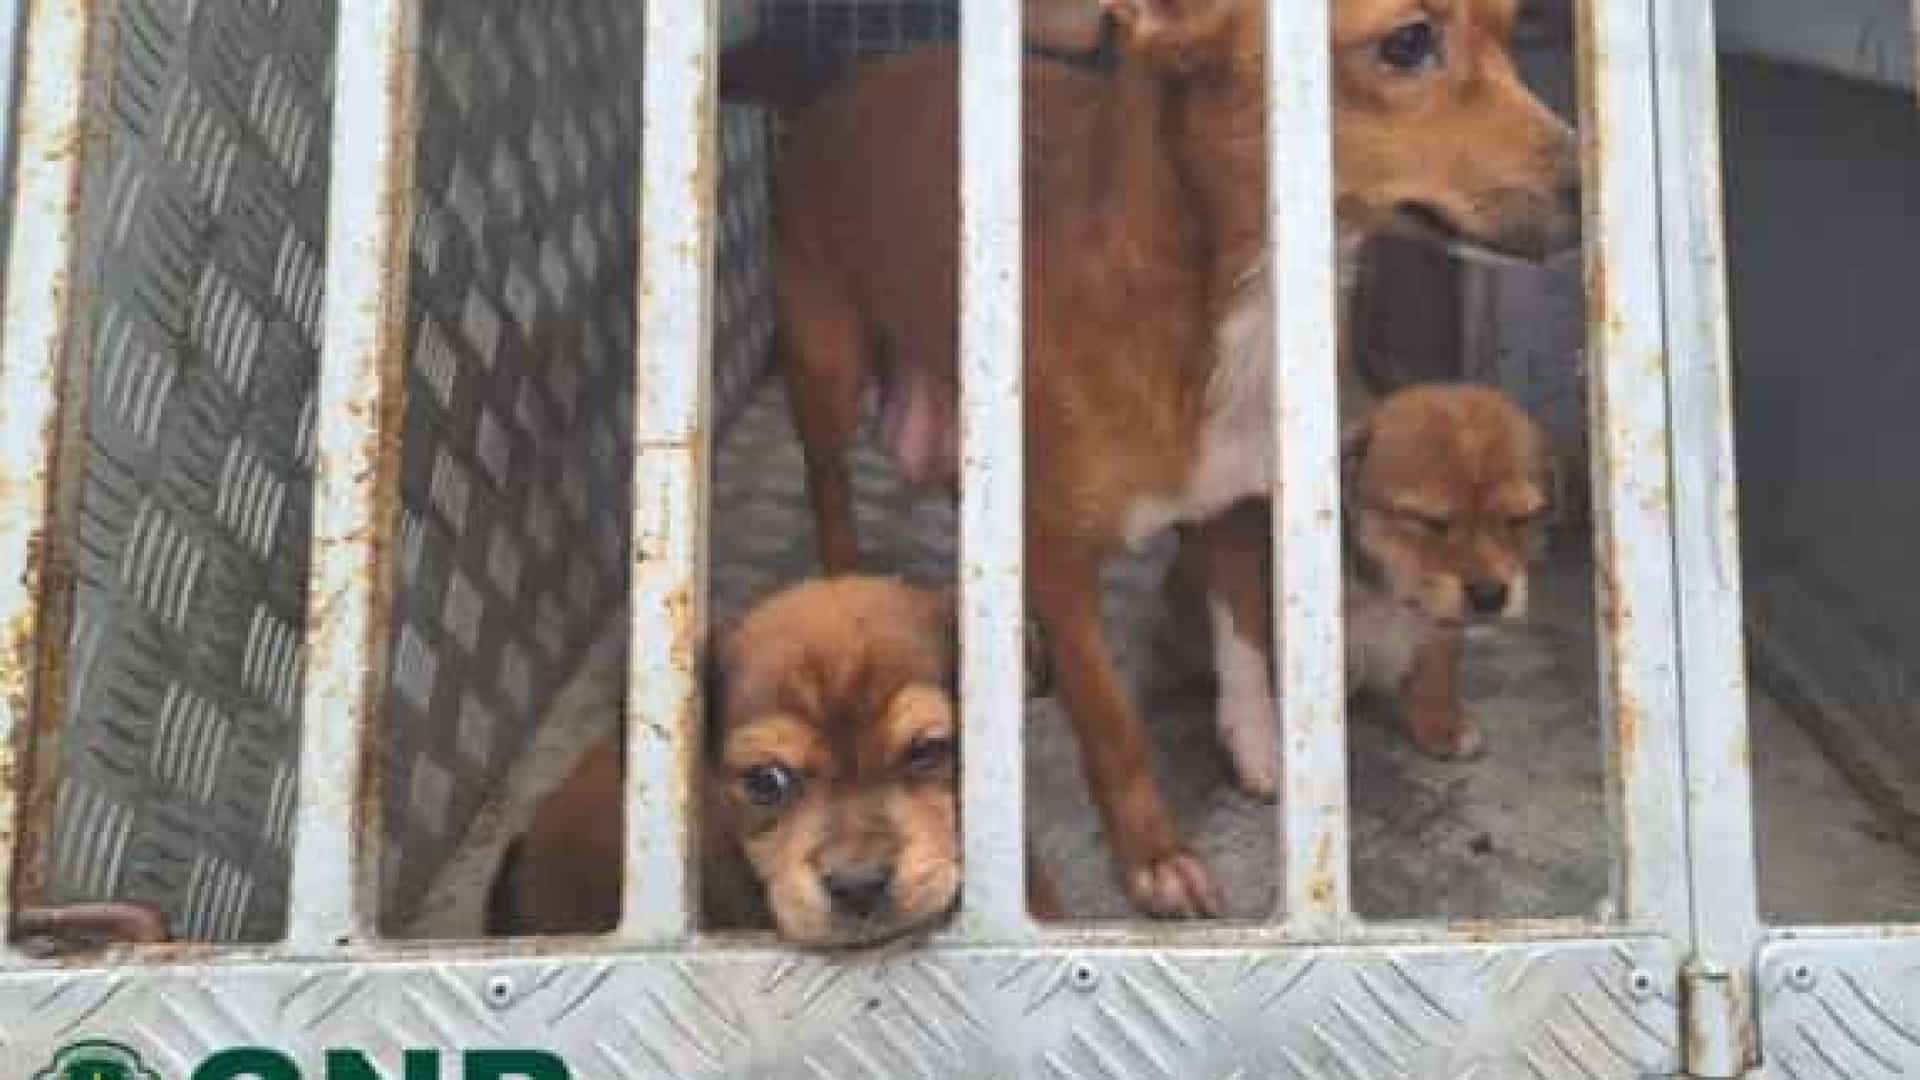 Resgatados três cães que estavam subnutridos e fechados sem condições de higiene em anexo de casa